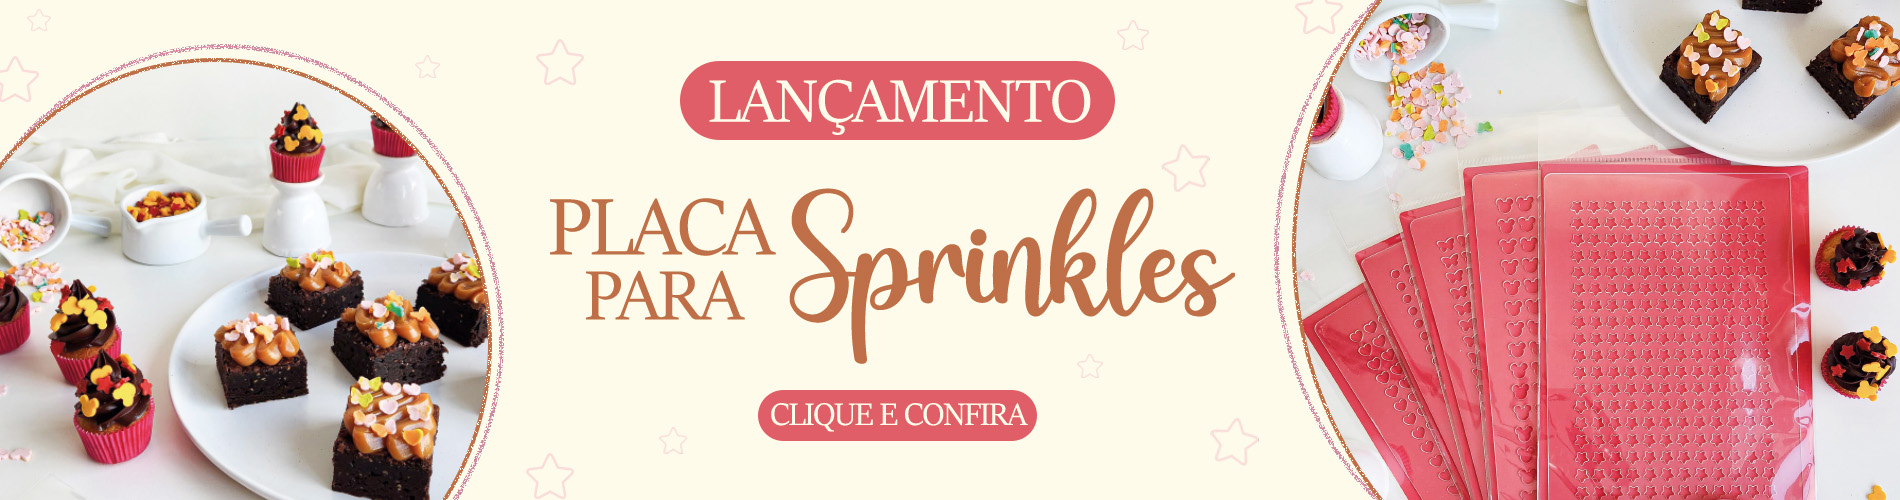 Banner Placa para Sprinkles Lançamento